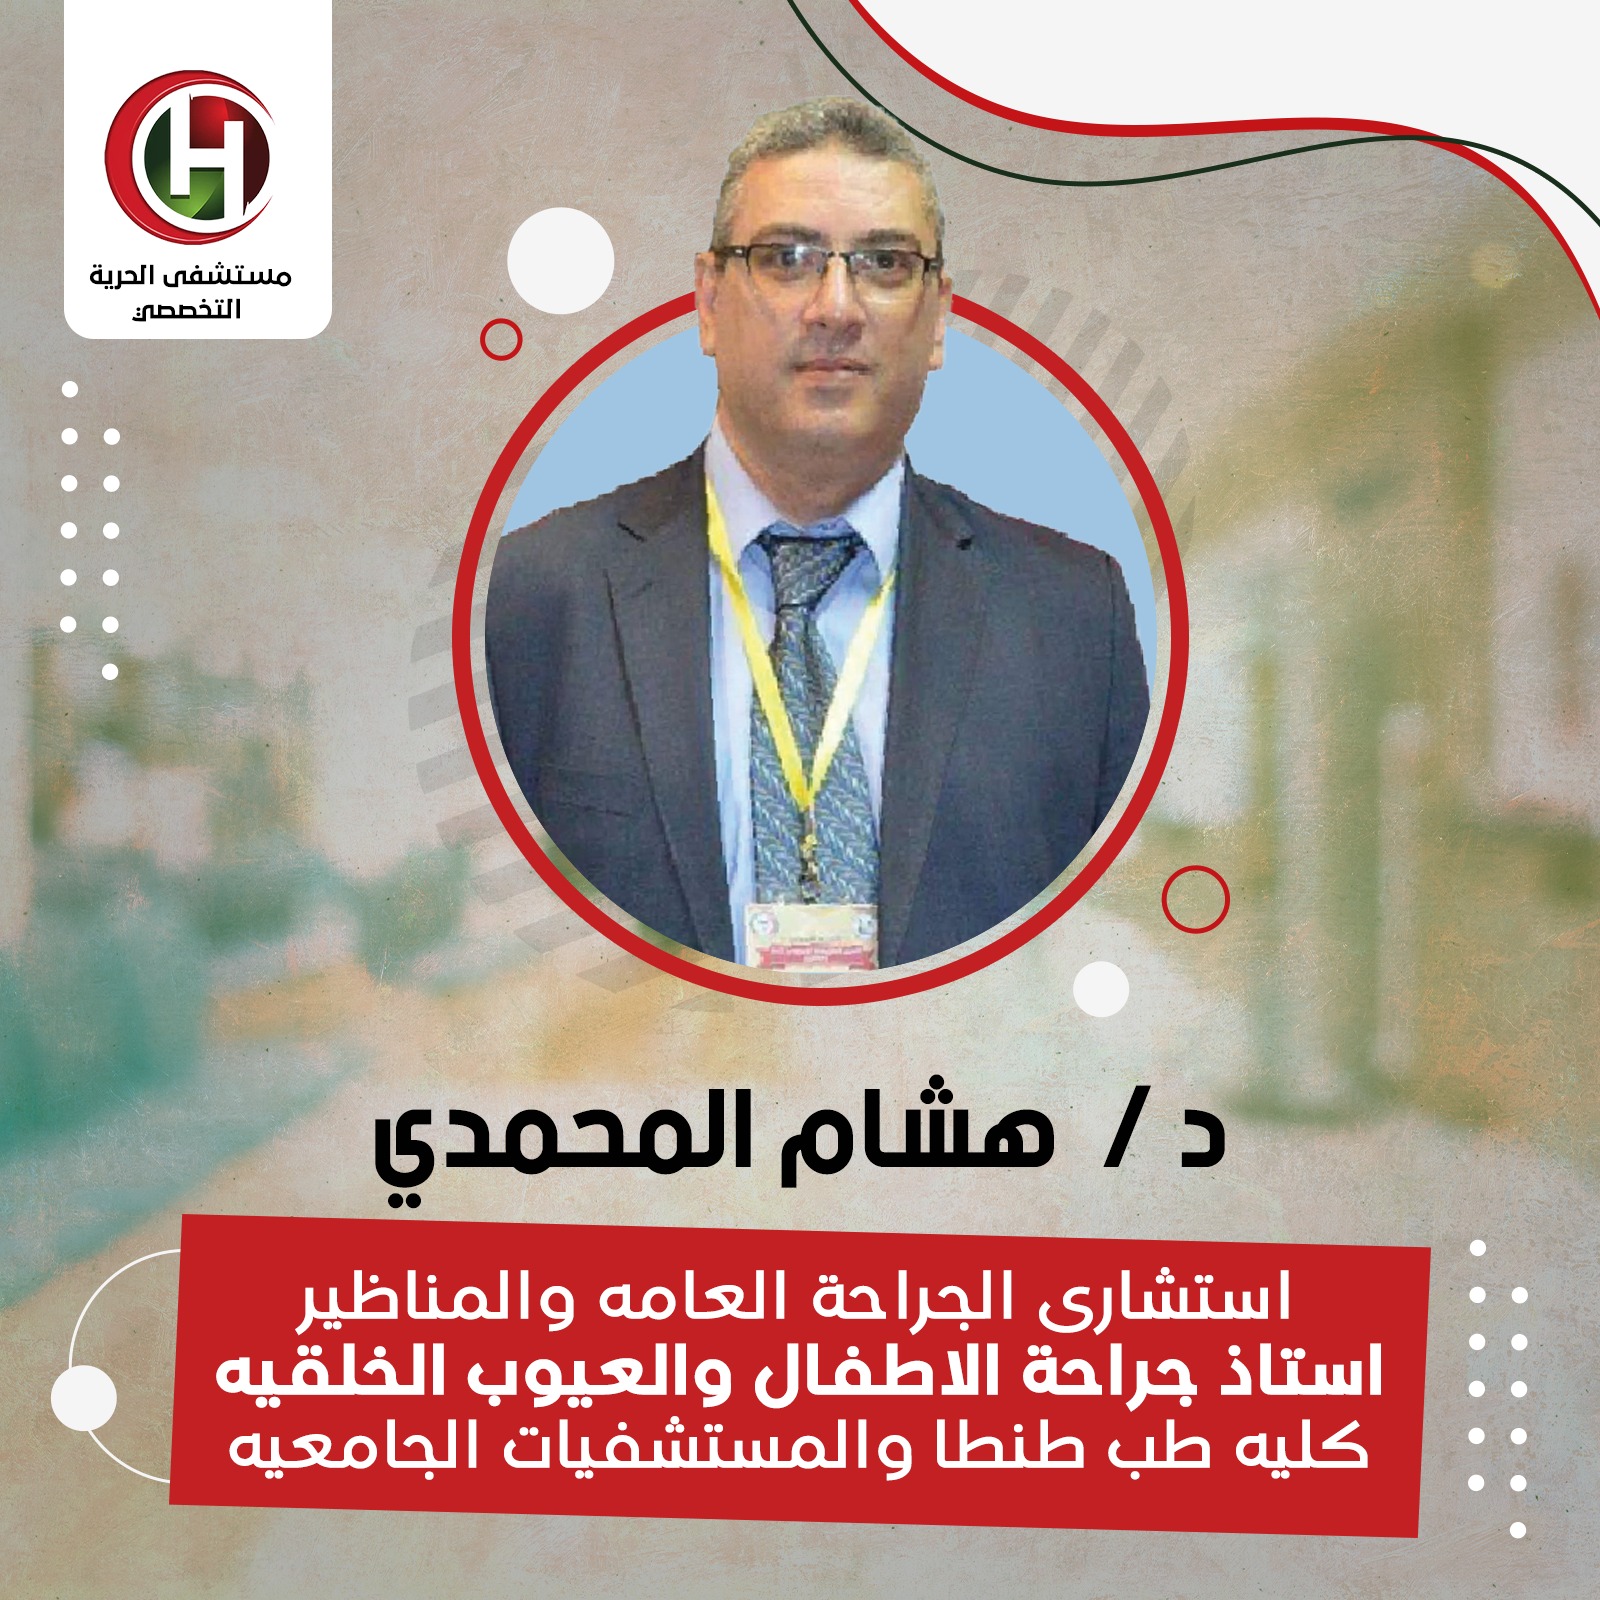 Dr. Hisham Al-Mohammadi